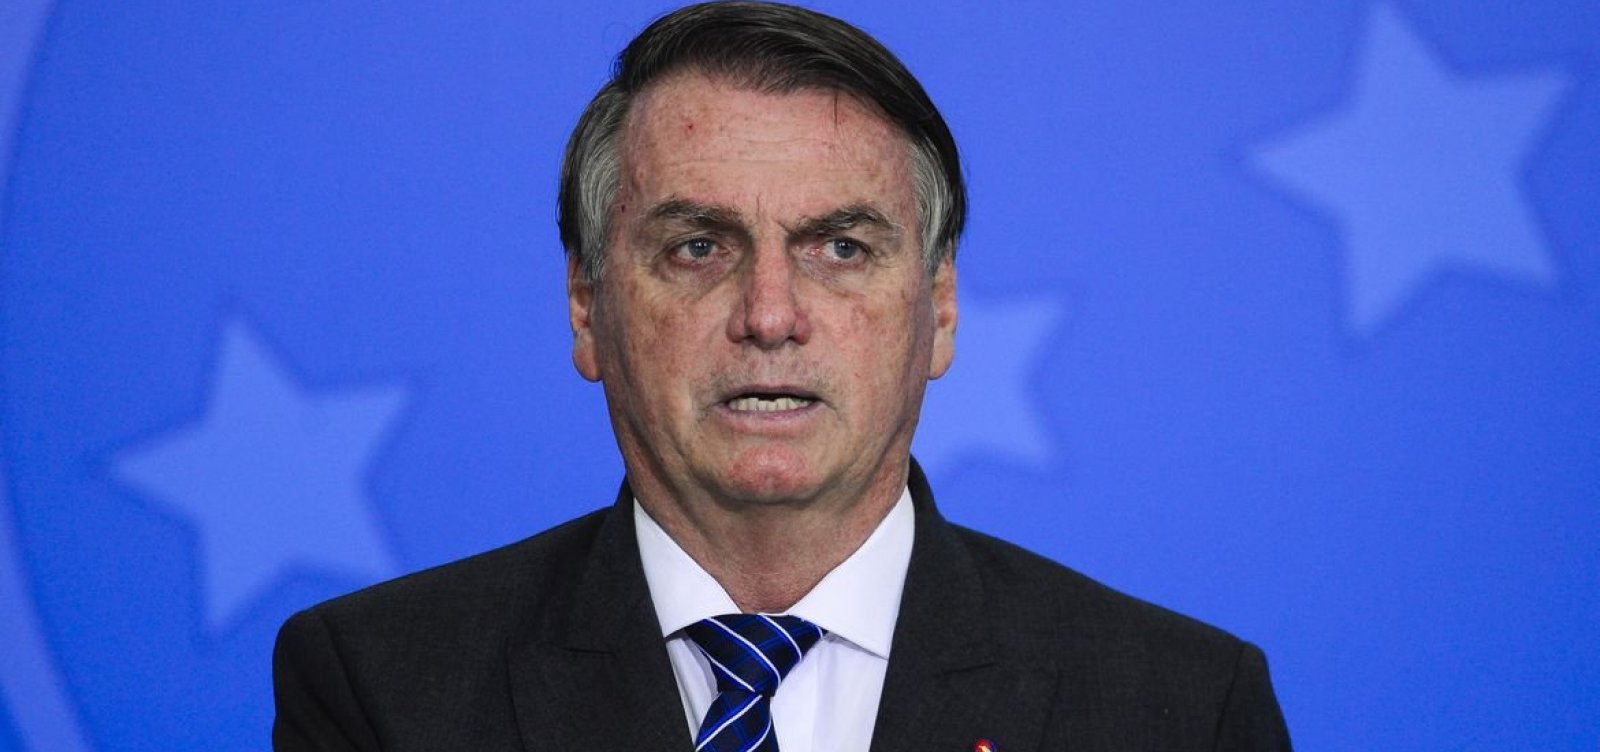 Julgamento que pode deixar Bolsonaro inelegível começa nesta quinta-feira